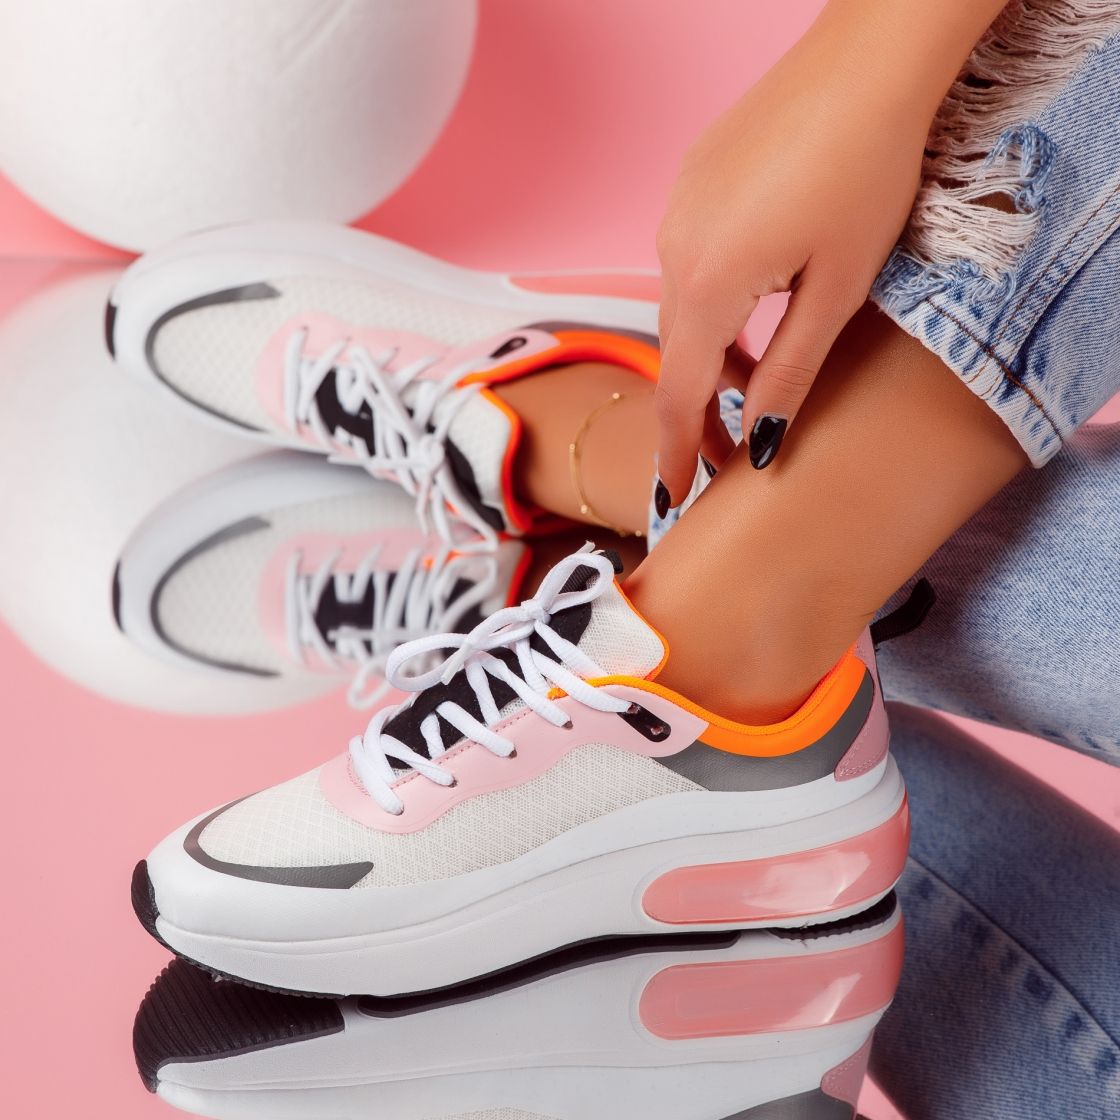 Дамски спортни обувки Elise2 бял/розово #5196M